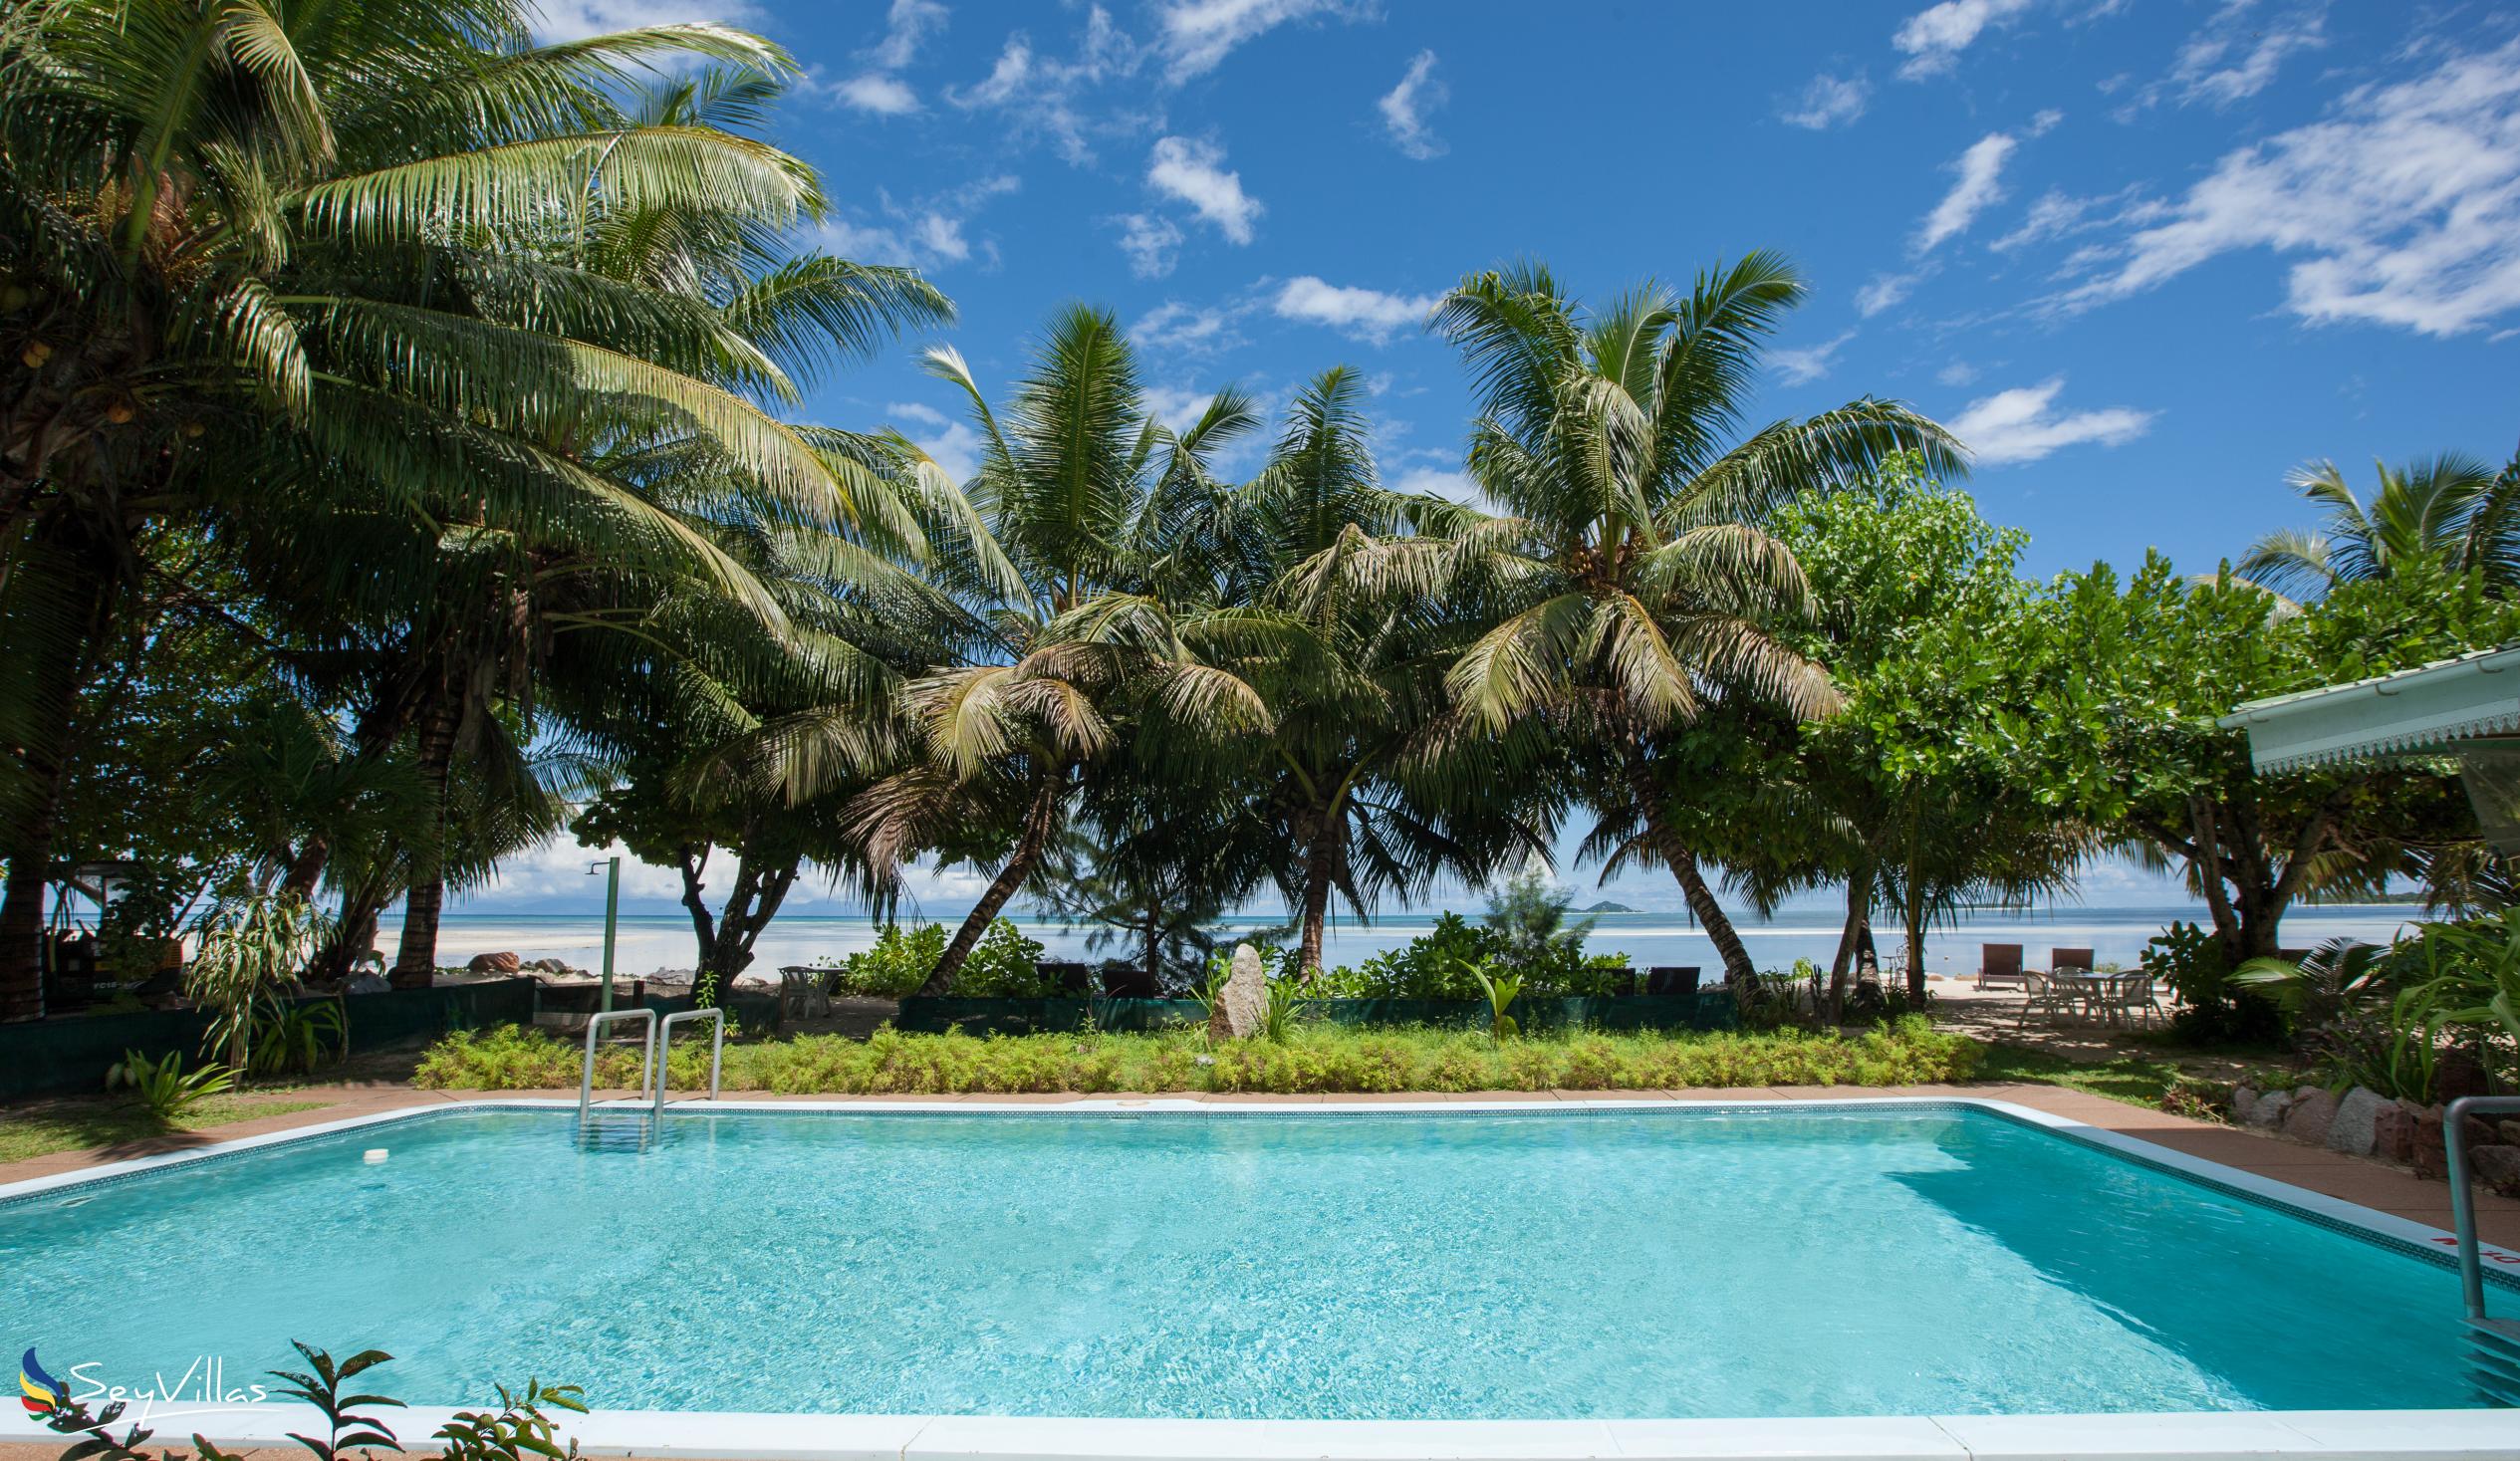 Foto 9: Palm Beach Hotel - Aussenbereich - Praslin (Seychellen)